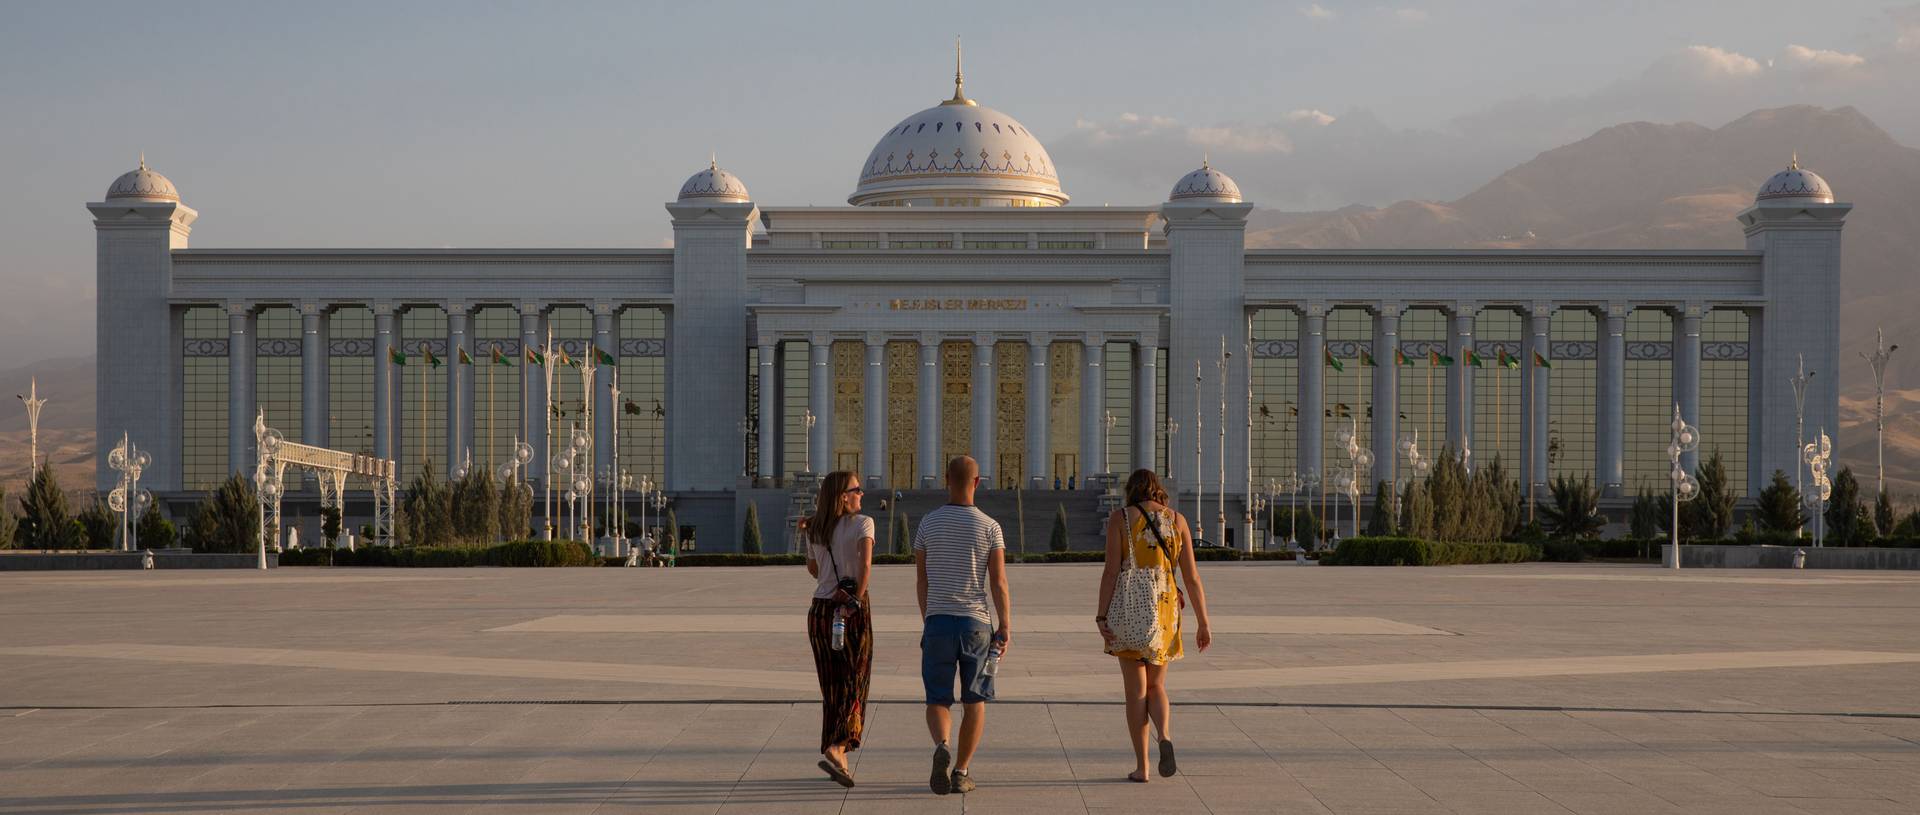 Mejliser Merkesi, Concert Hall, Ashgabat